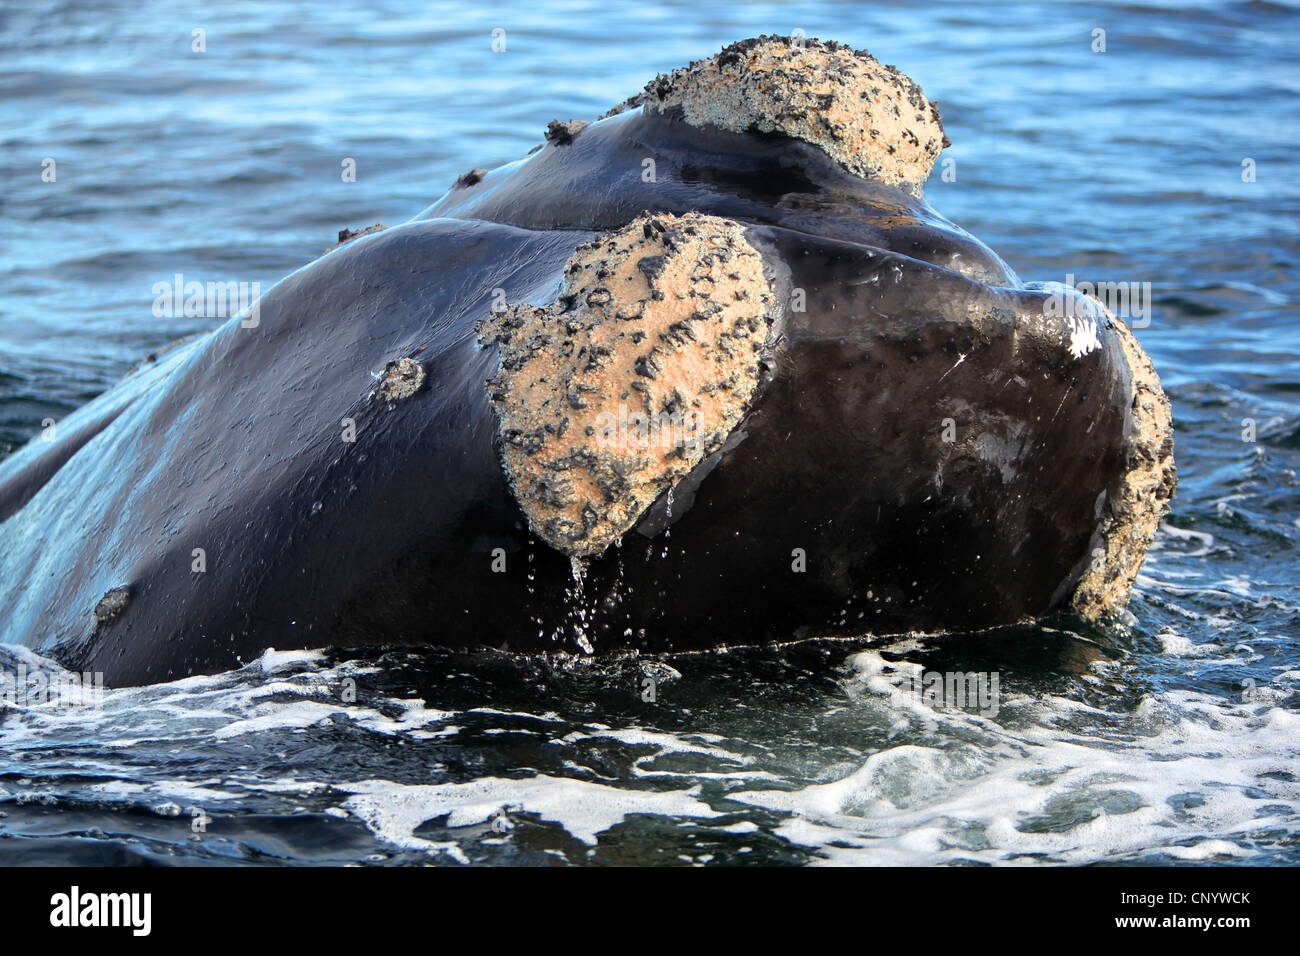 southern right whale (Eubalaena australis, Balaena glacialis australis), in Atlantik sea, Argentina, Peninsula Valdes Stock Photo